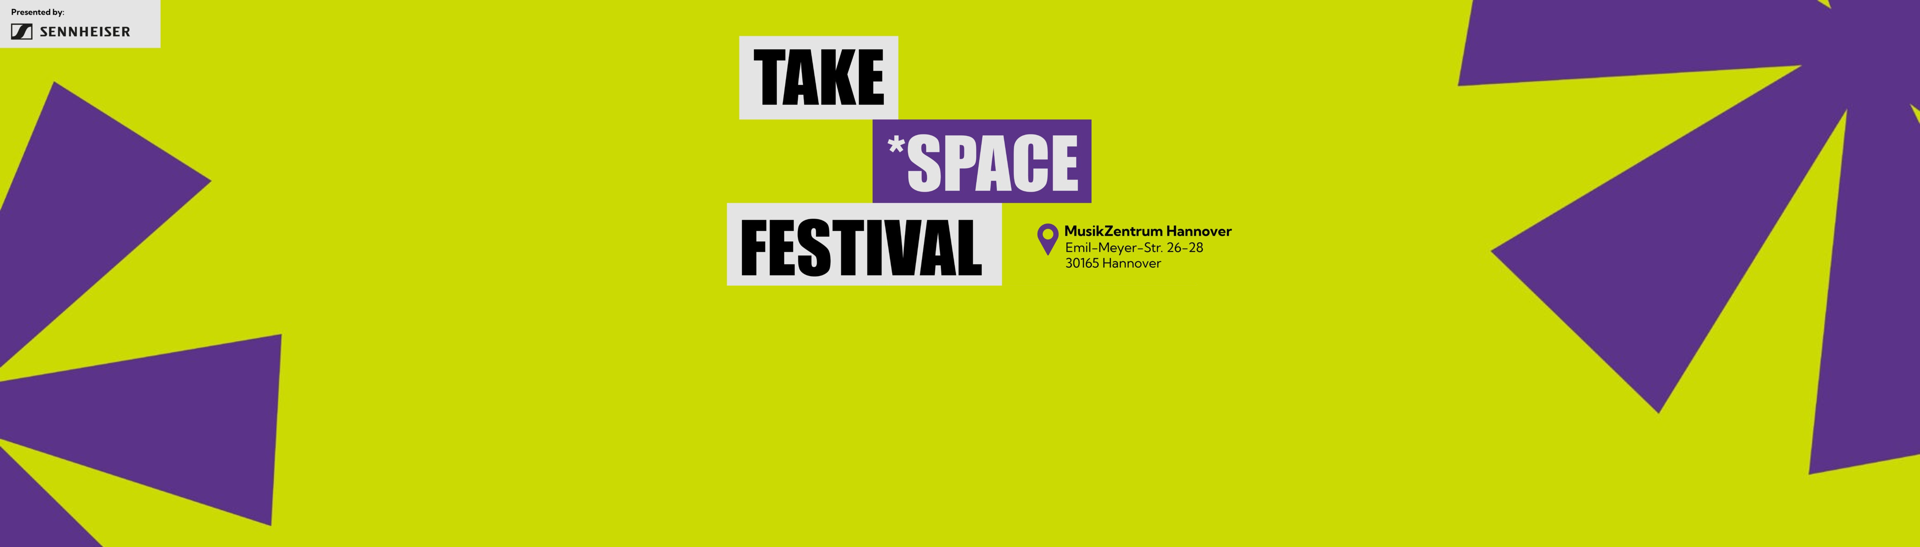 Sennheiser präsentiert Take *Space: Das Festival für eine inklusive Musikbranche 